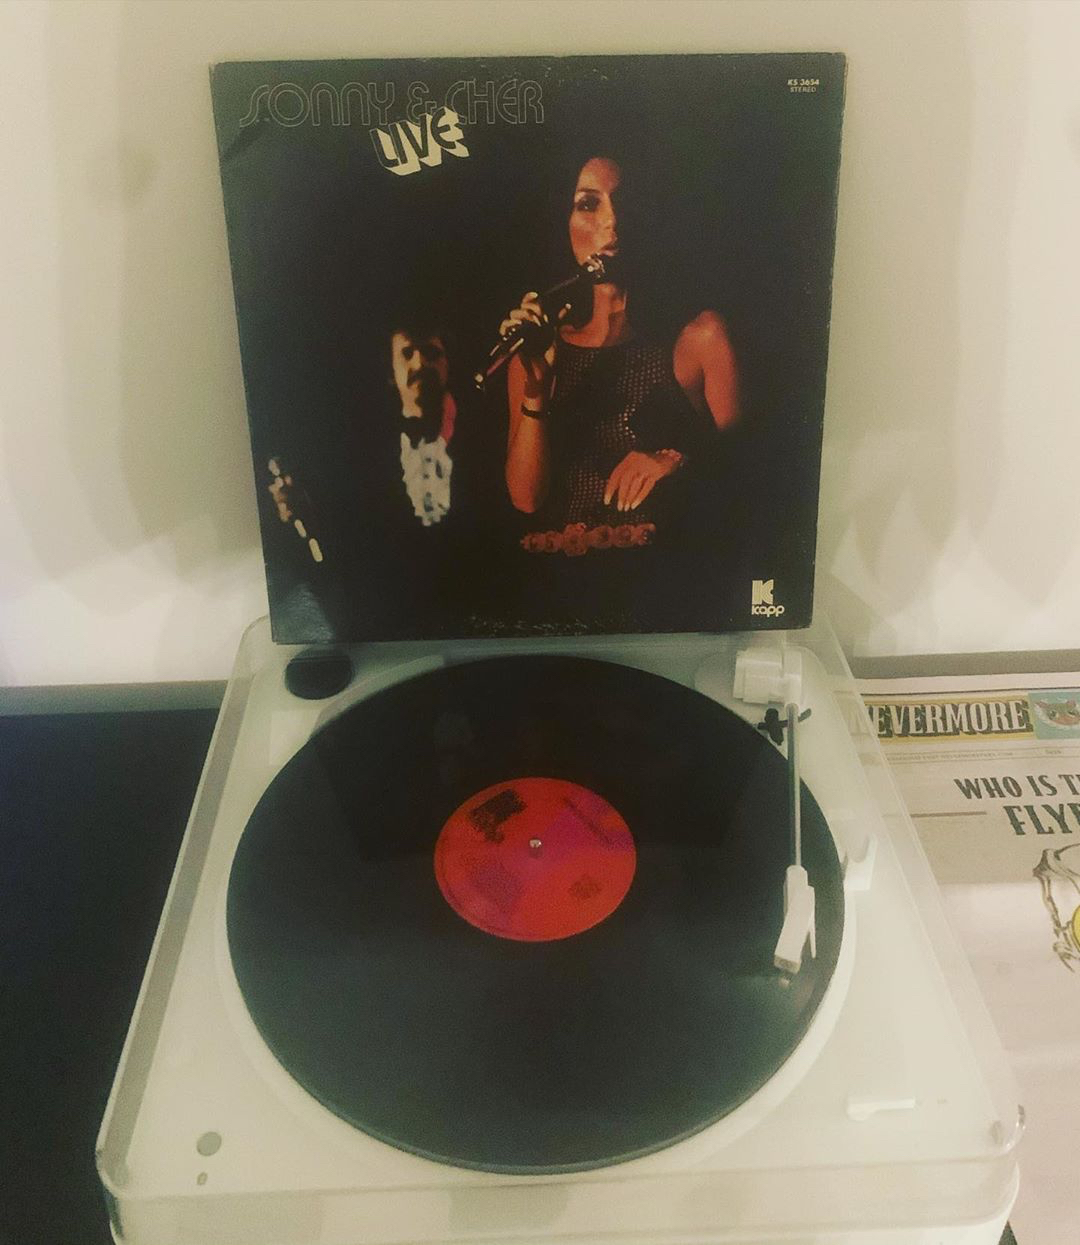 "Sonny & Cher Live" vinyl LP